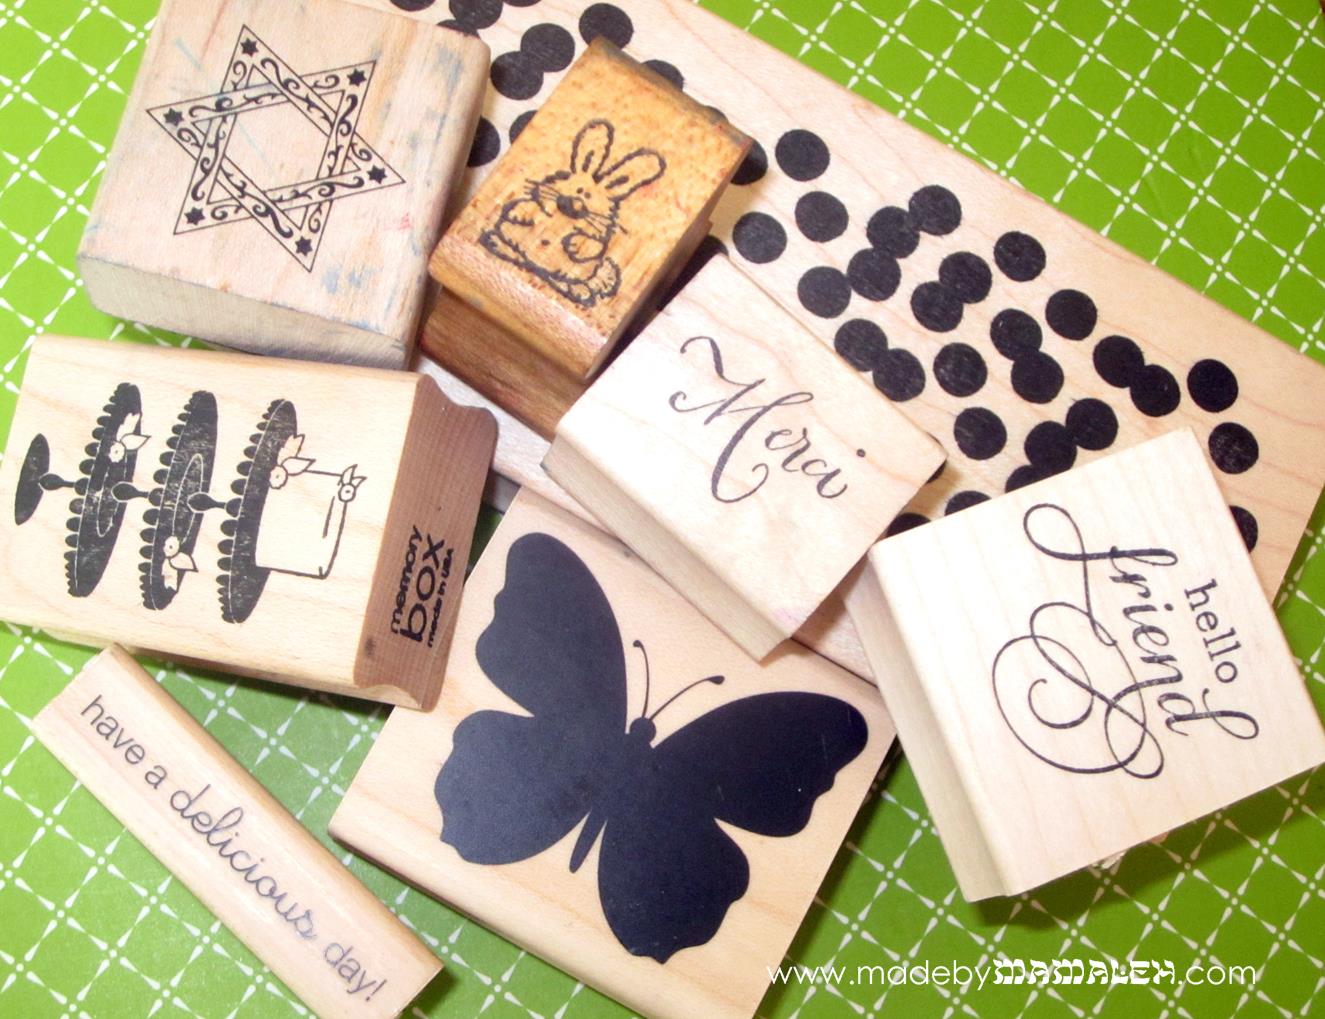 Wood Stamp Sets